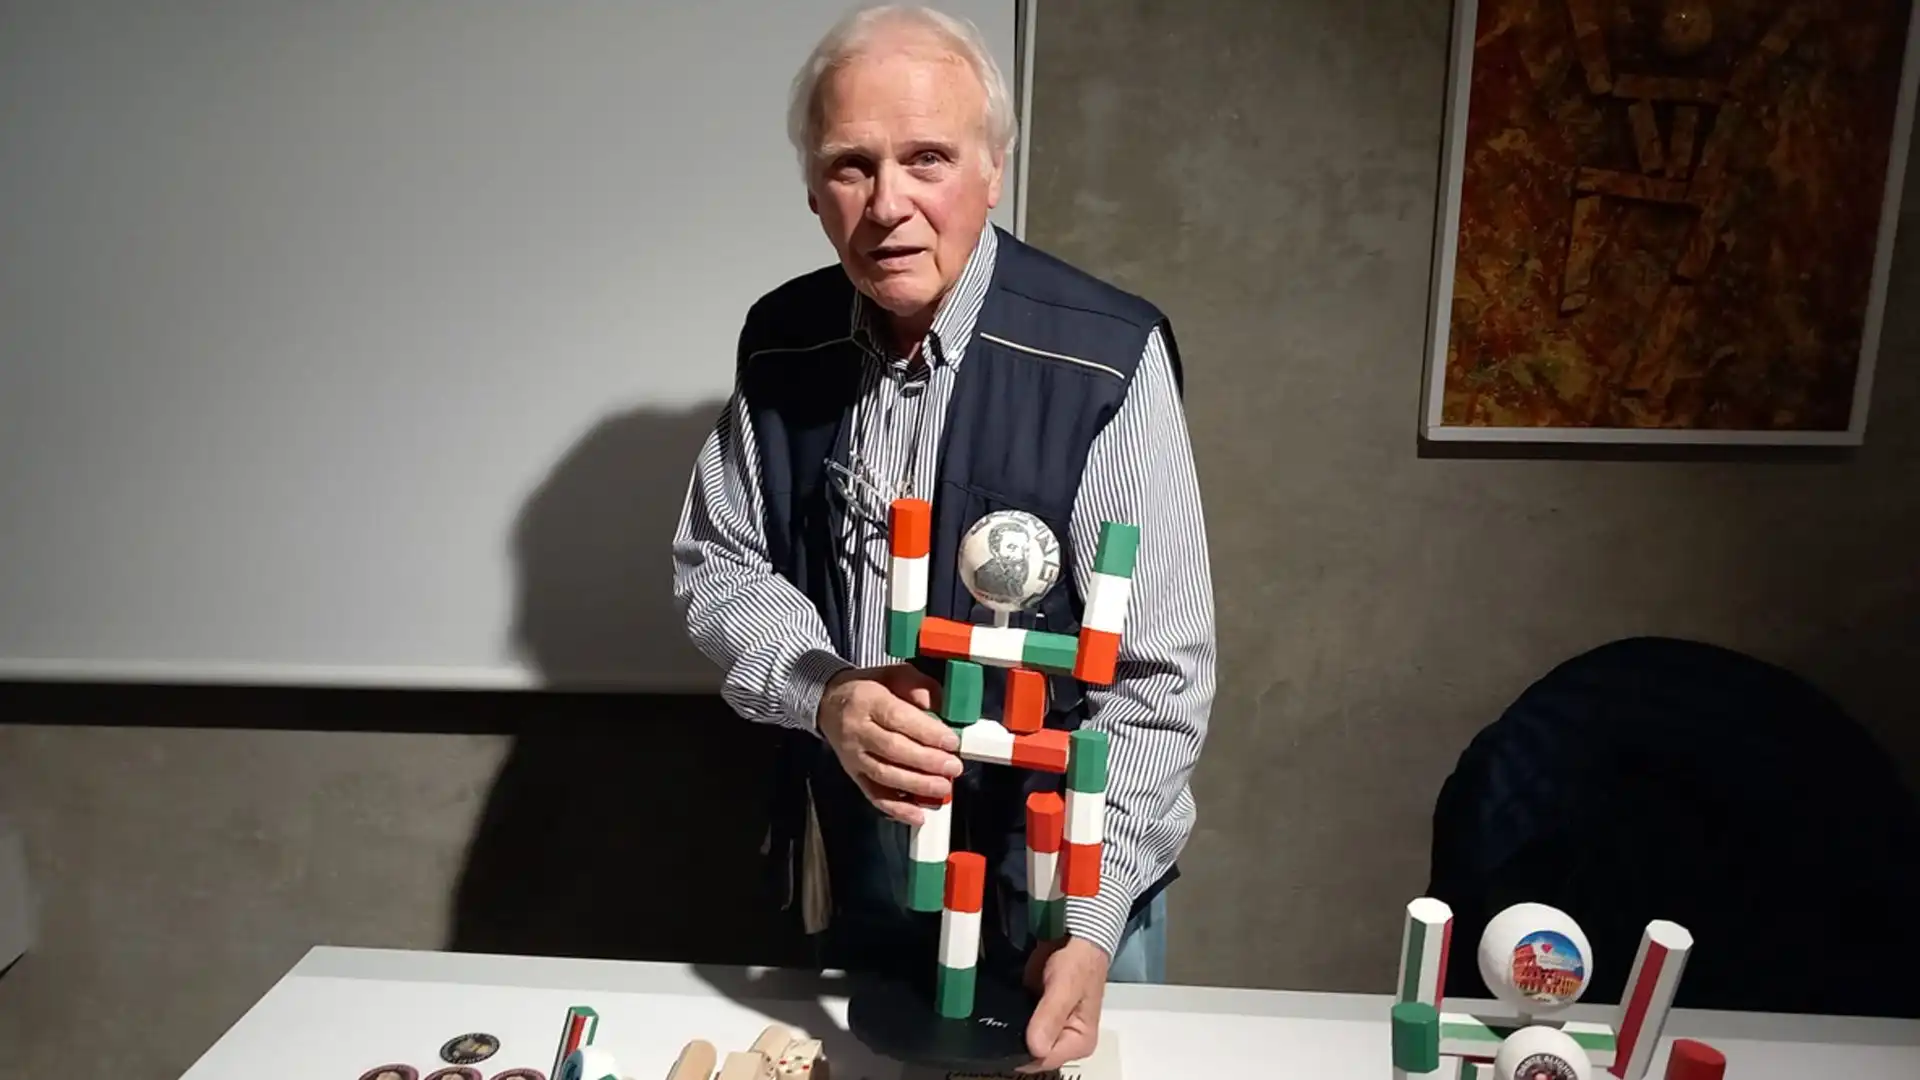 Lucio Boscardin, l'inventore di 'Ciao', ha presentato l'evoluzione della mascotte di Italia '90